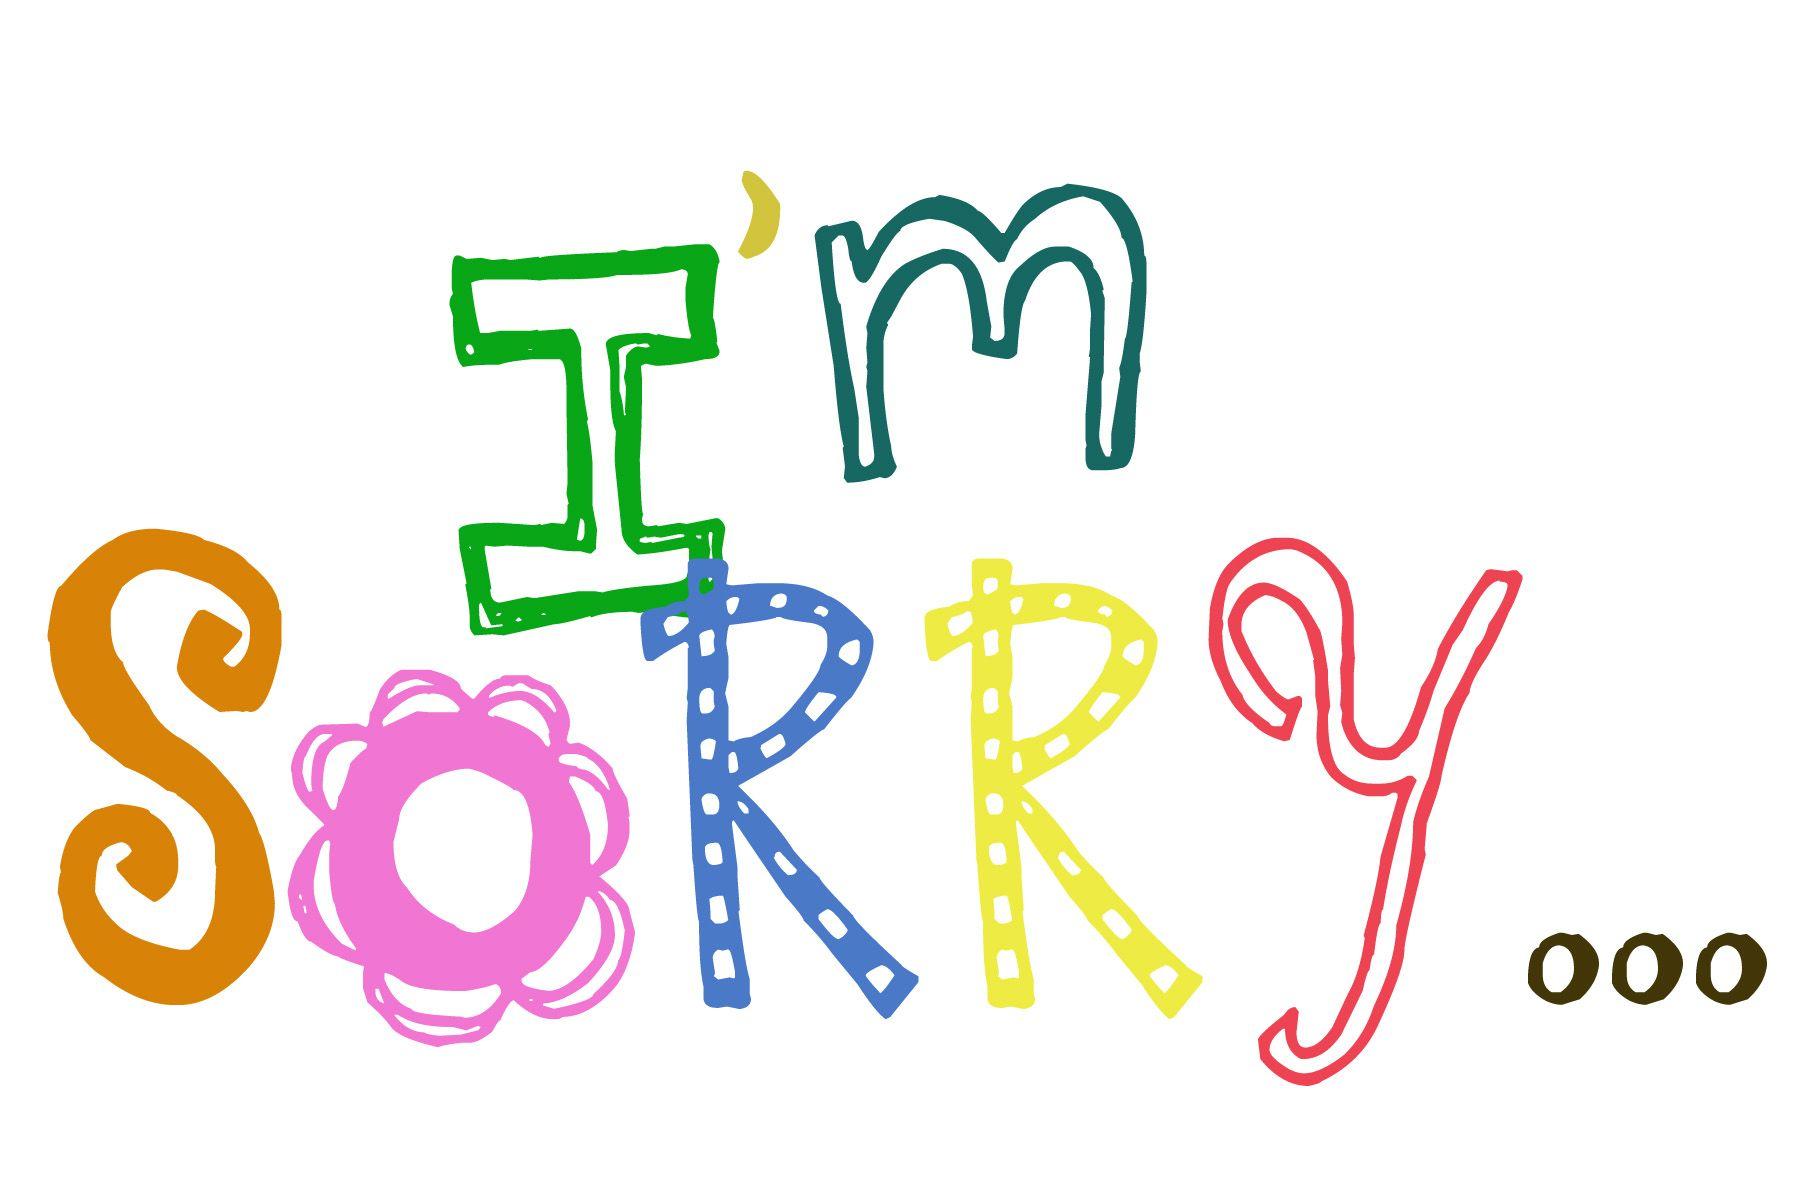 ✿ I'm sorry.. ಠ_ಠ My humble apologies ಠ_ಠ